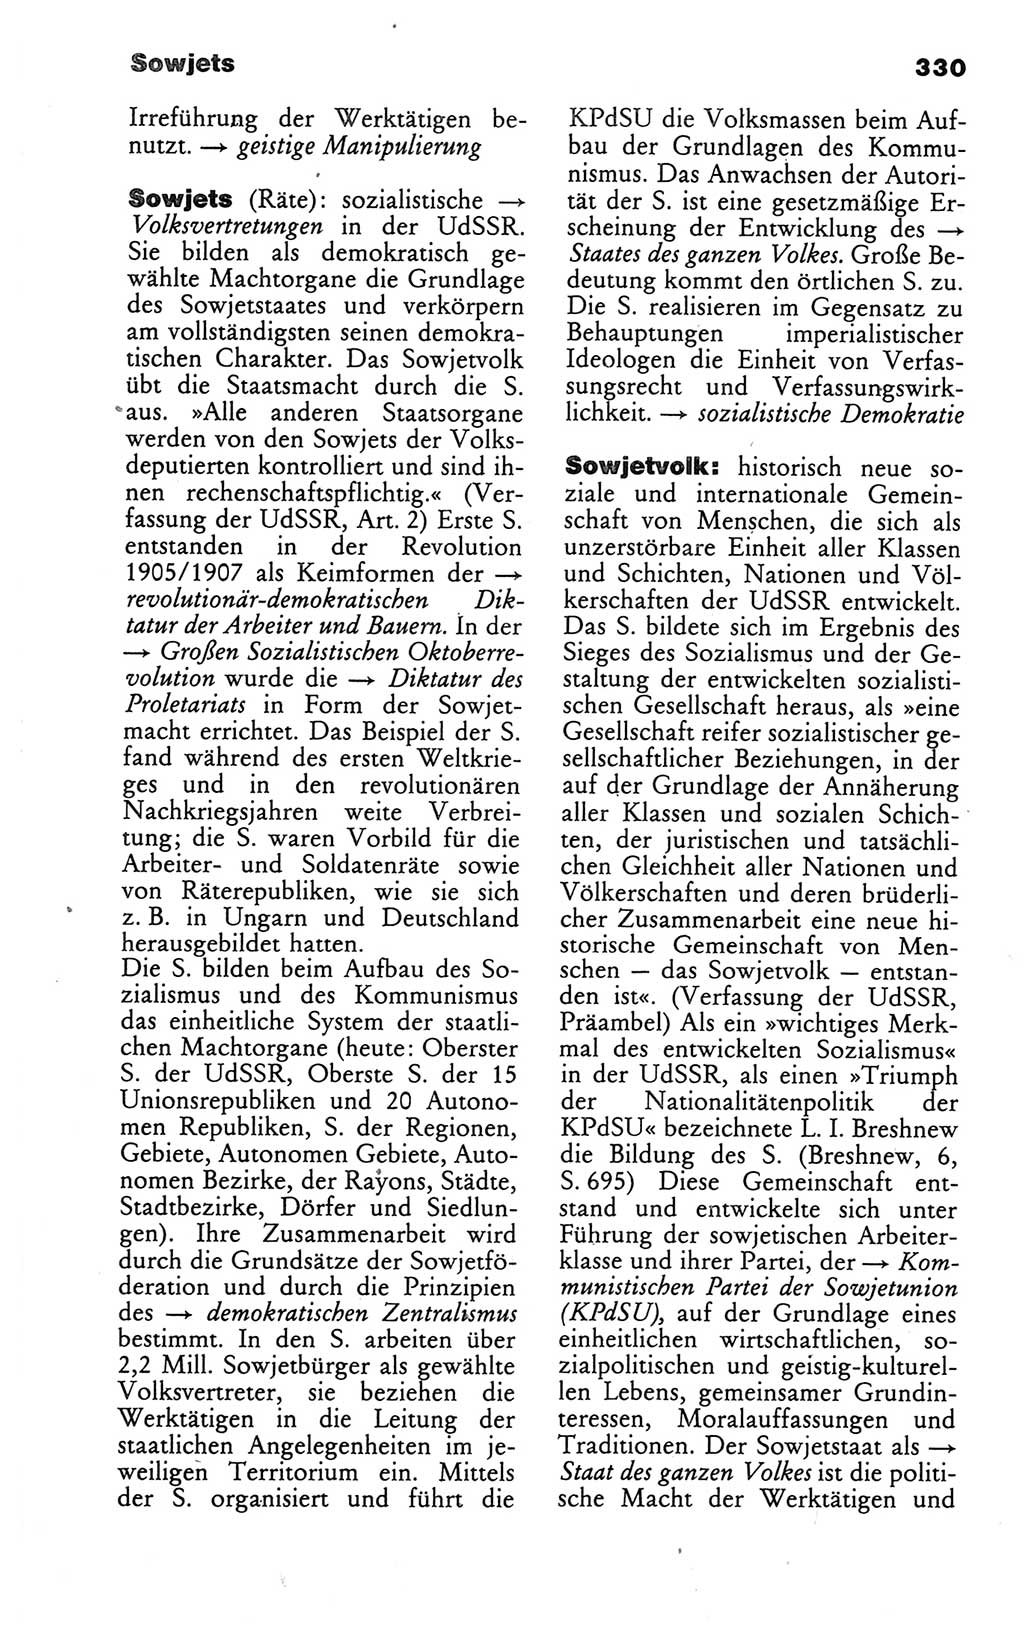 Wörterbuch des wissenschaftlichen Kommunismus [Deutsche Demokratische Republik (DDR)] 1986, Seite 330 (Wb. wiss. Komm. DDR 1986, S. 330)